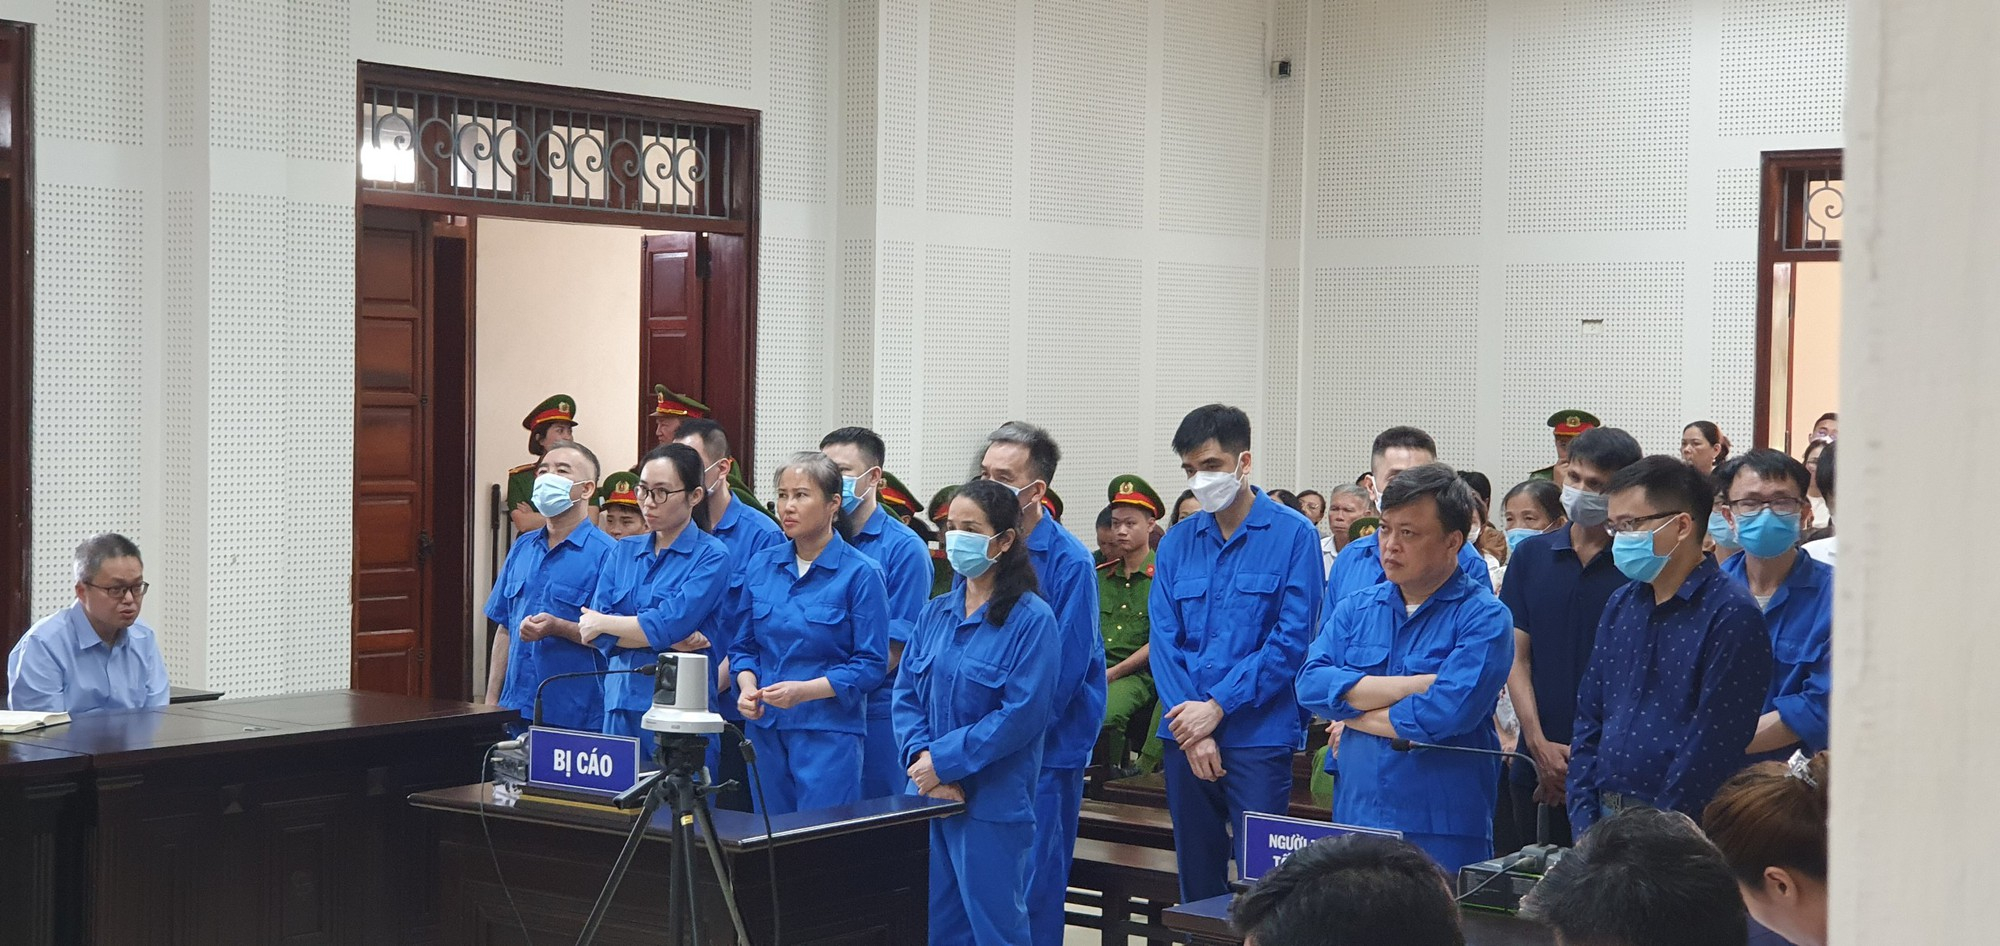 Các bị cáo trong vụ án Vi phạm quy định về đấu thầu gây hậu quả nghiêm trọng, đưa - nhận hối lộ, xảy ra tại Sở Giáo dục và Đào tạo (GDĐT) tỉnh Quảng Ninh và Công ty NSJ của Hoàng Thị Thúy Nga - cựu